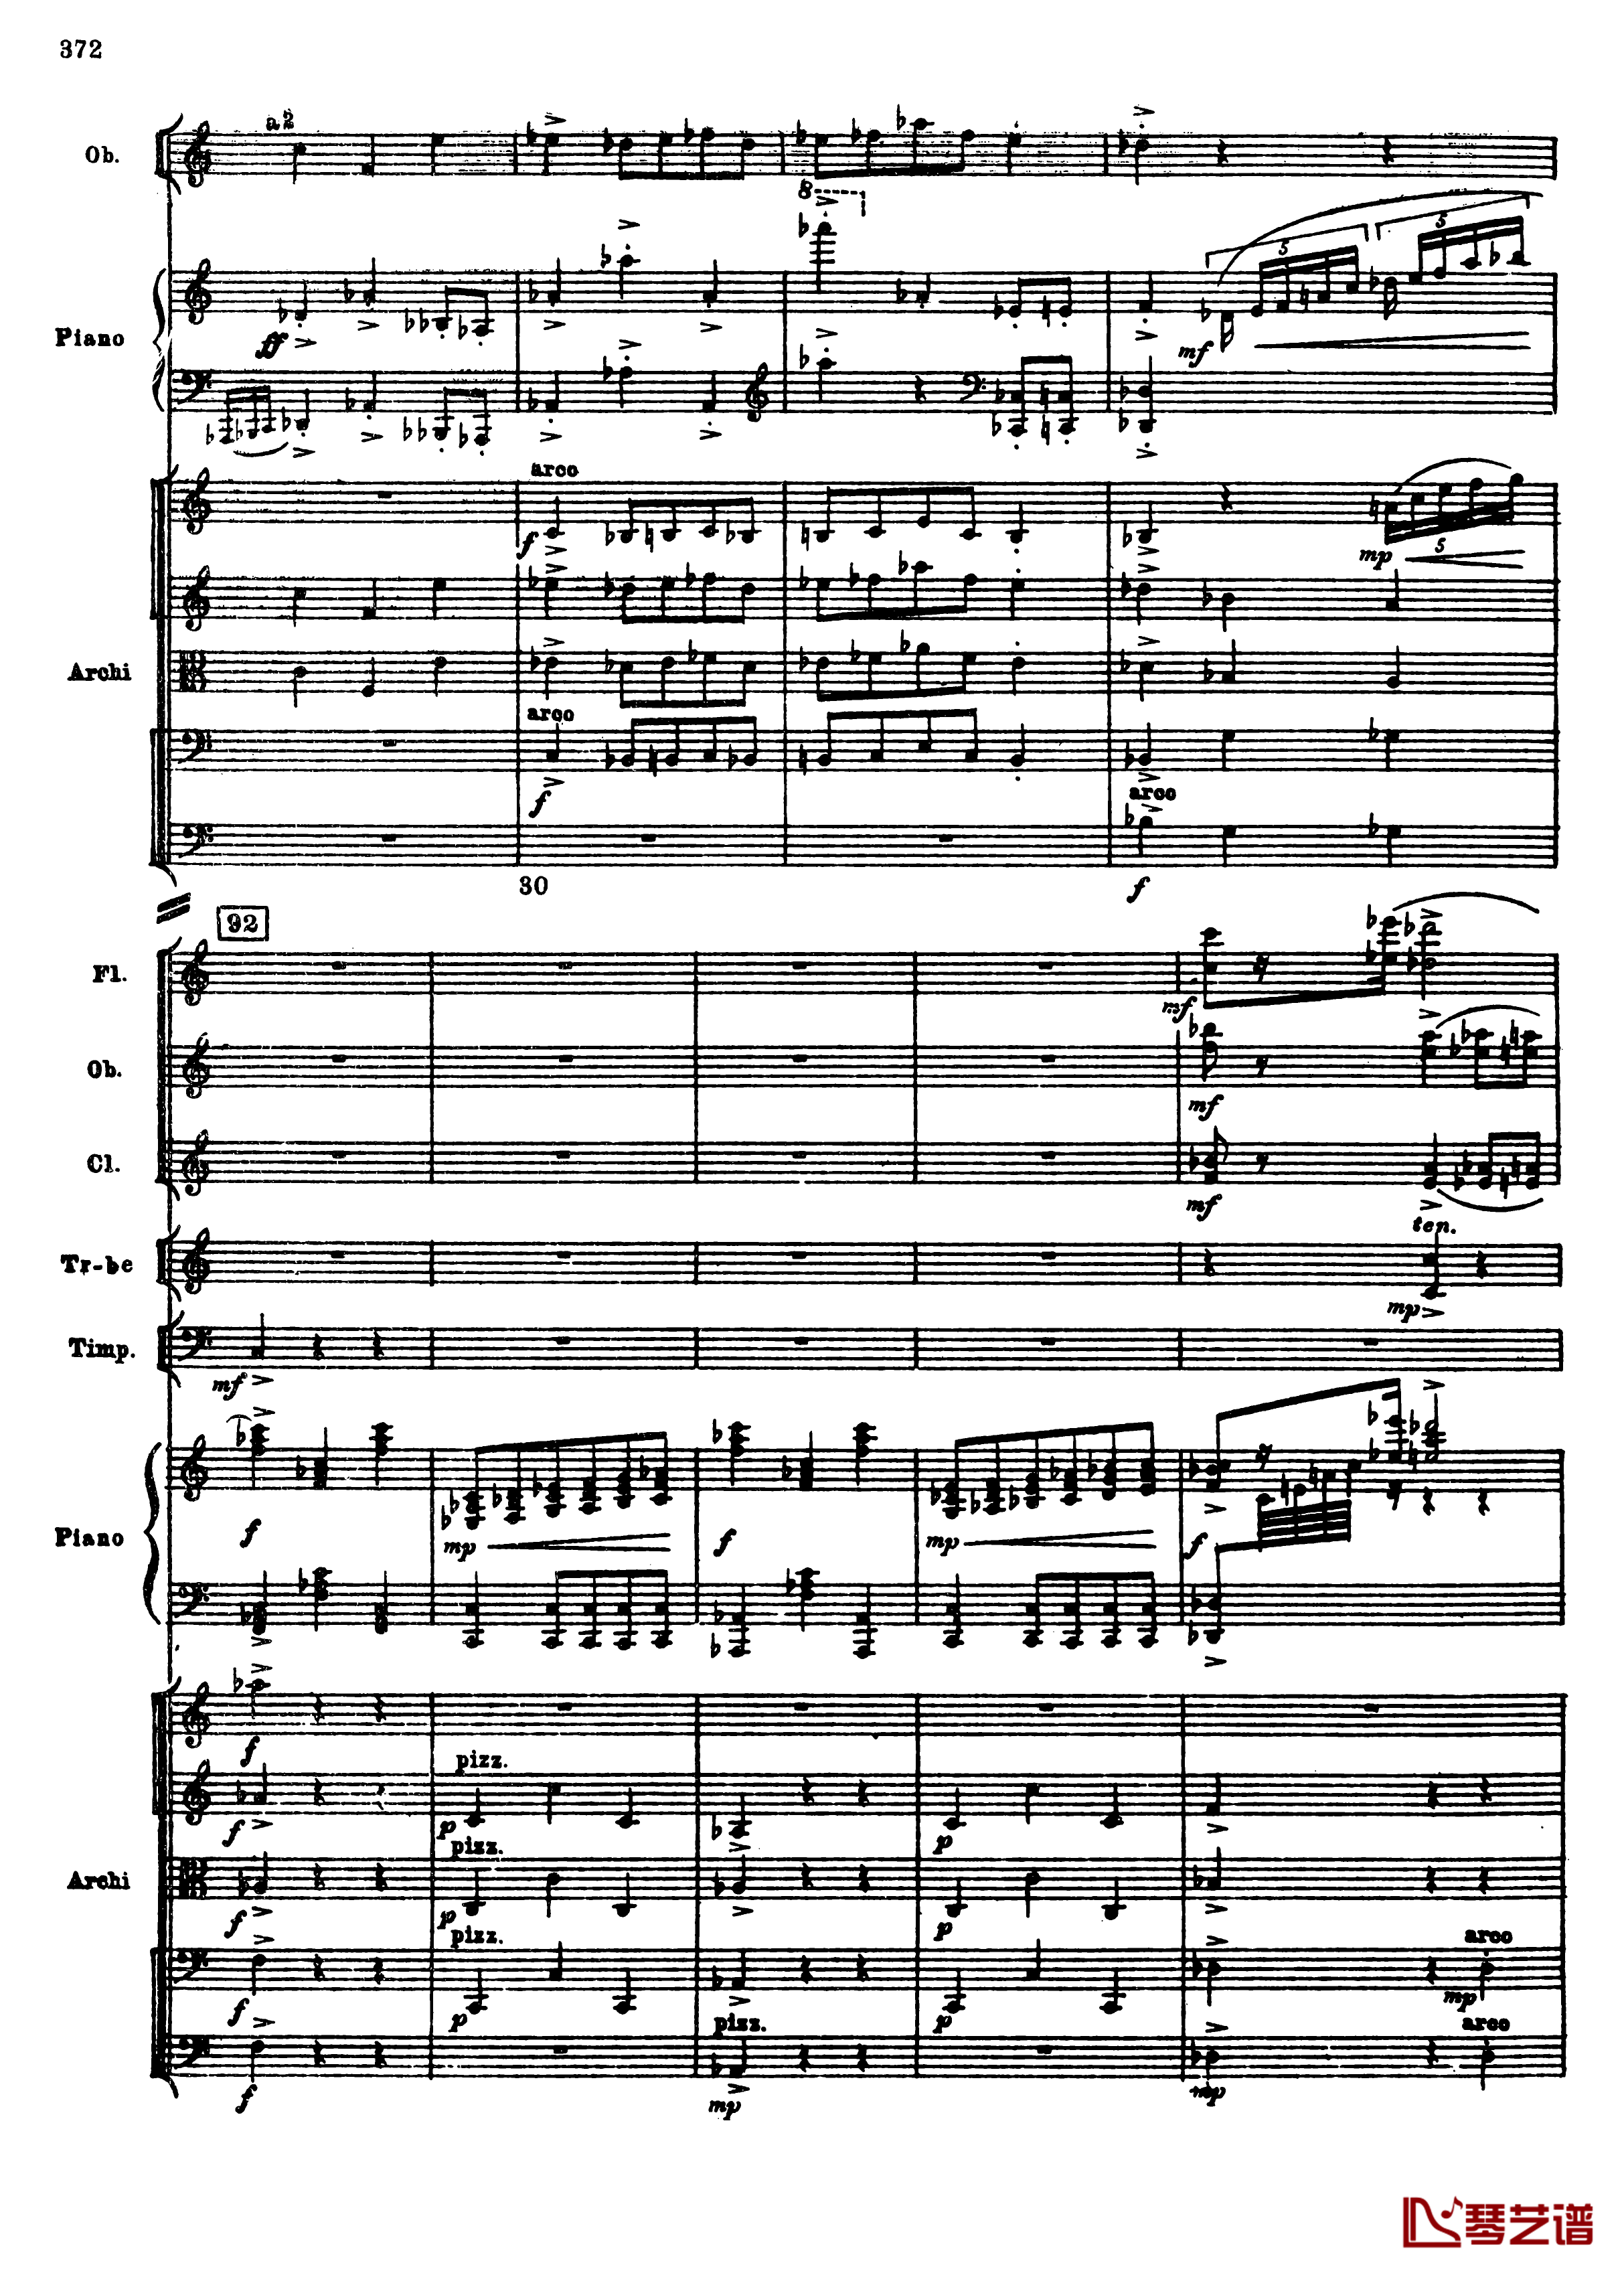 普罗科菲耶夫第三钢琴协奏曲钢琴谱-总谱-普罗科非耶夫104